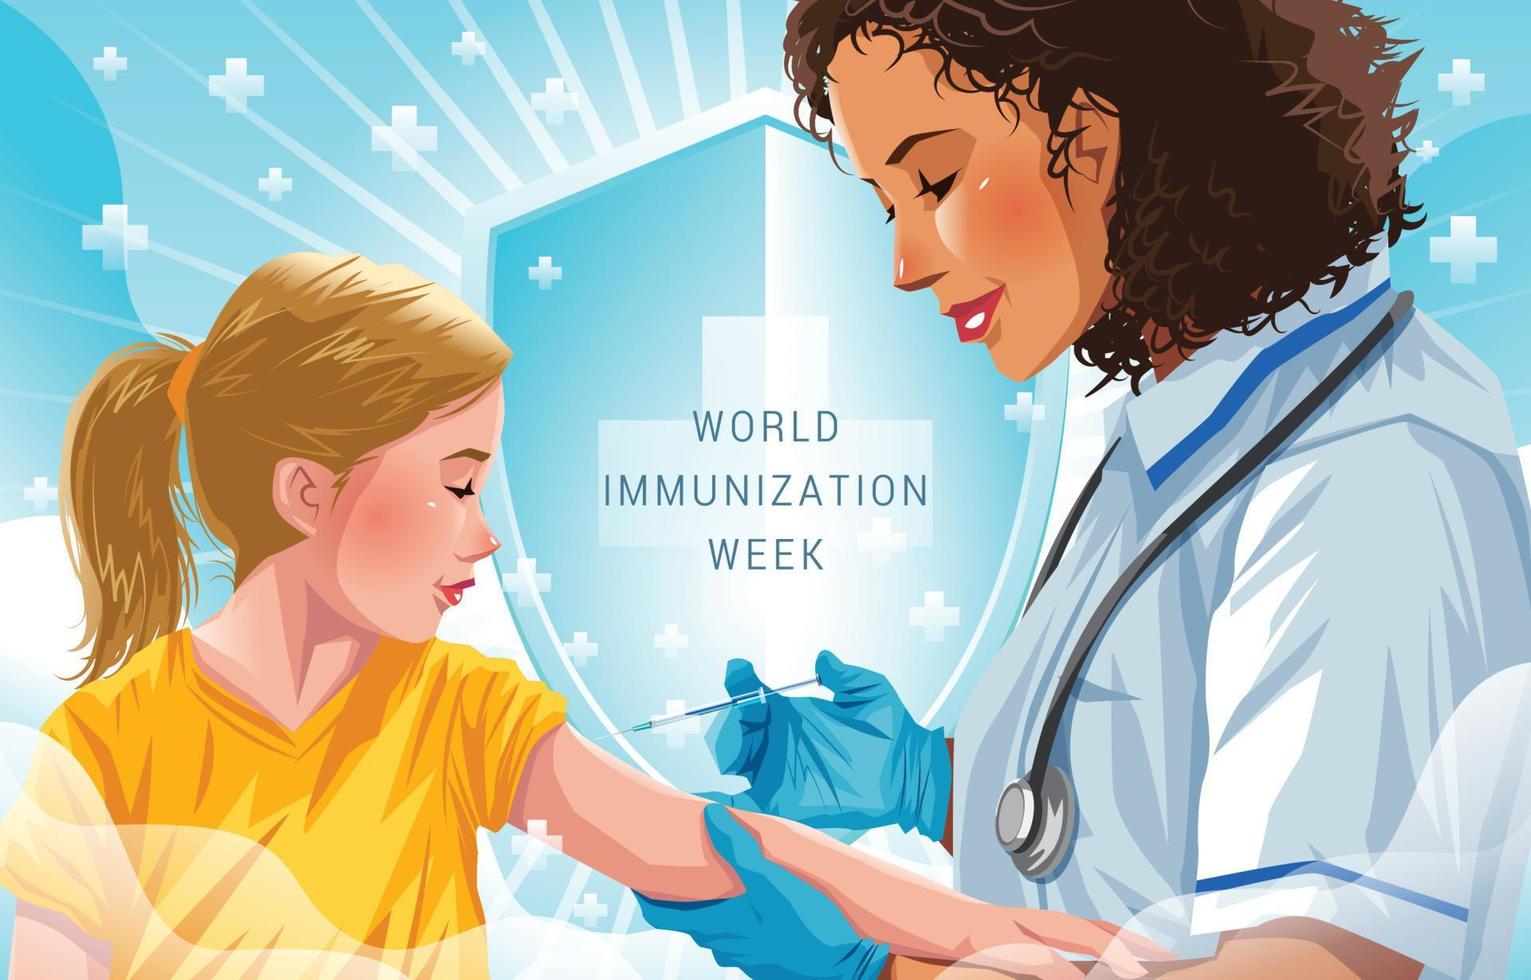 wereld immunisatie week achtergrond concept met jong kind met vaccinatie vector